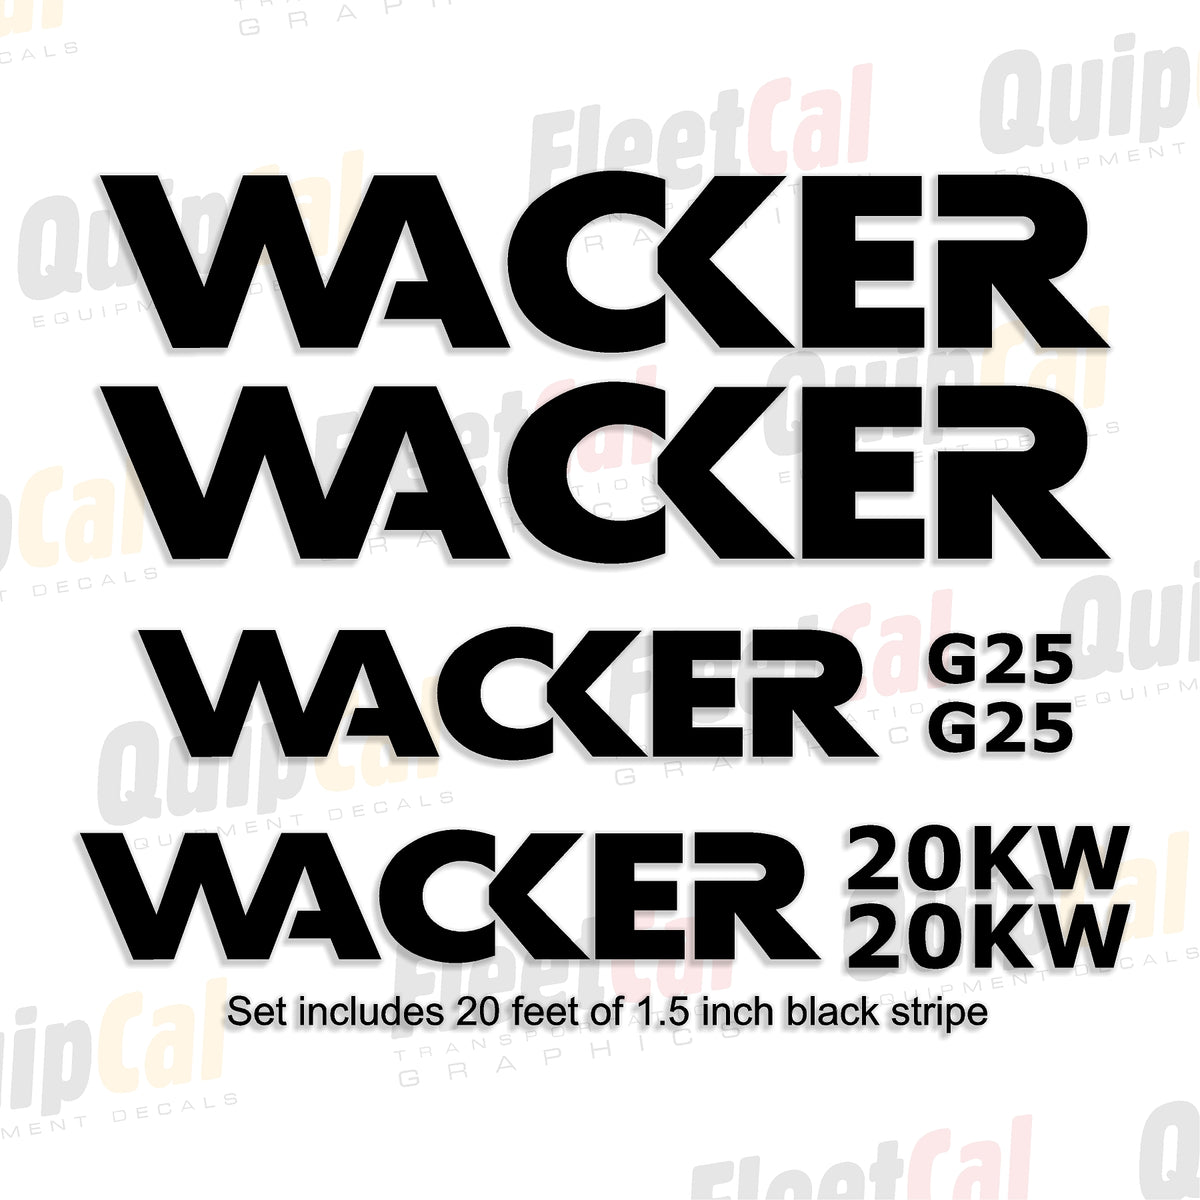 Decals for Wacker Generators